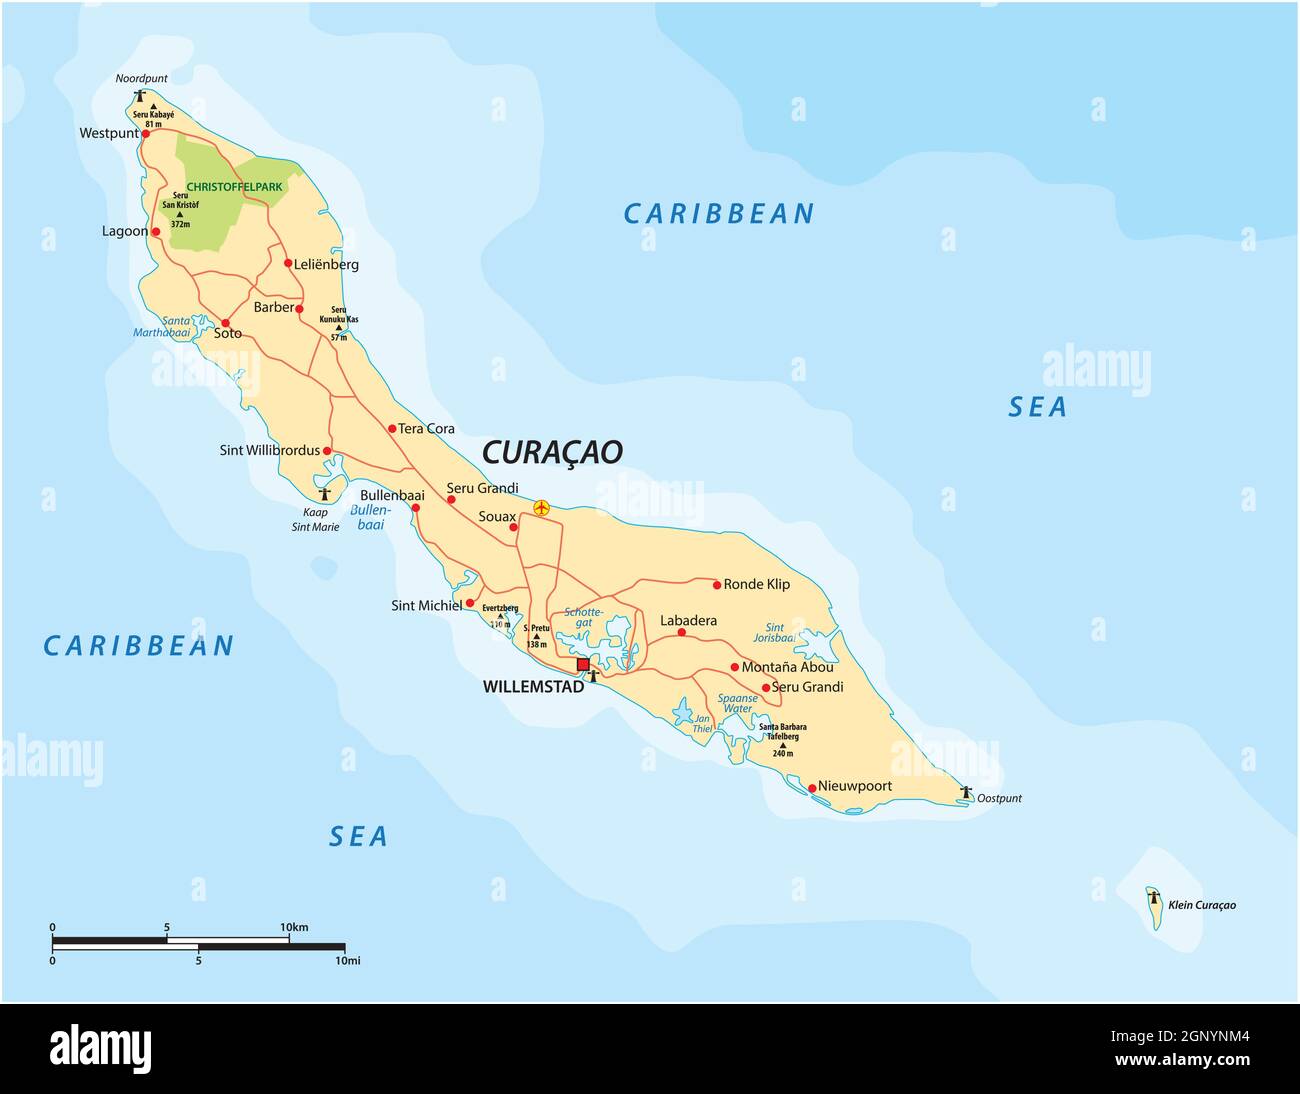 Mappa stradale vettoriale dell'isola Caribbean ABC di Curacao Illustrazione Vettoriale